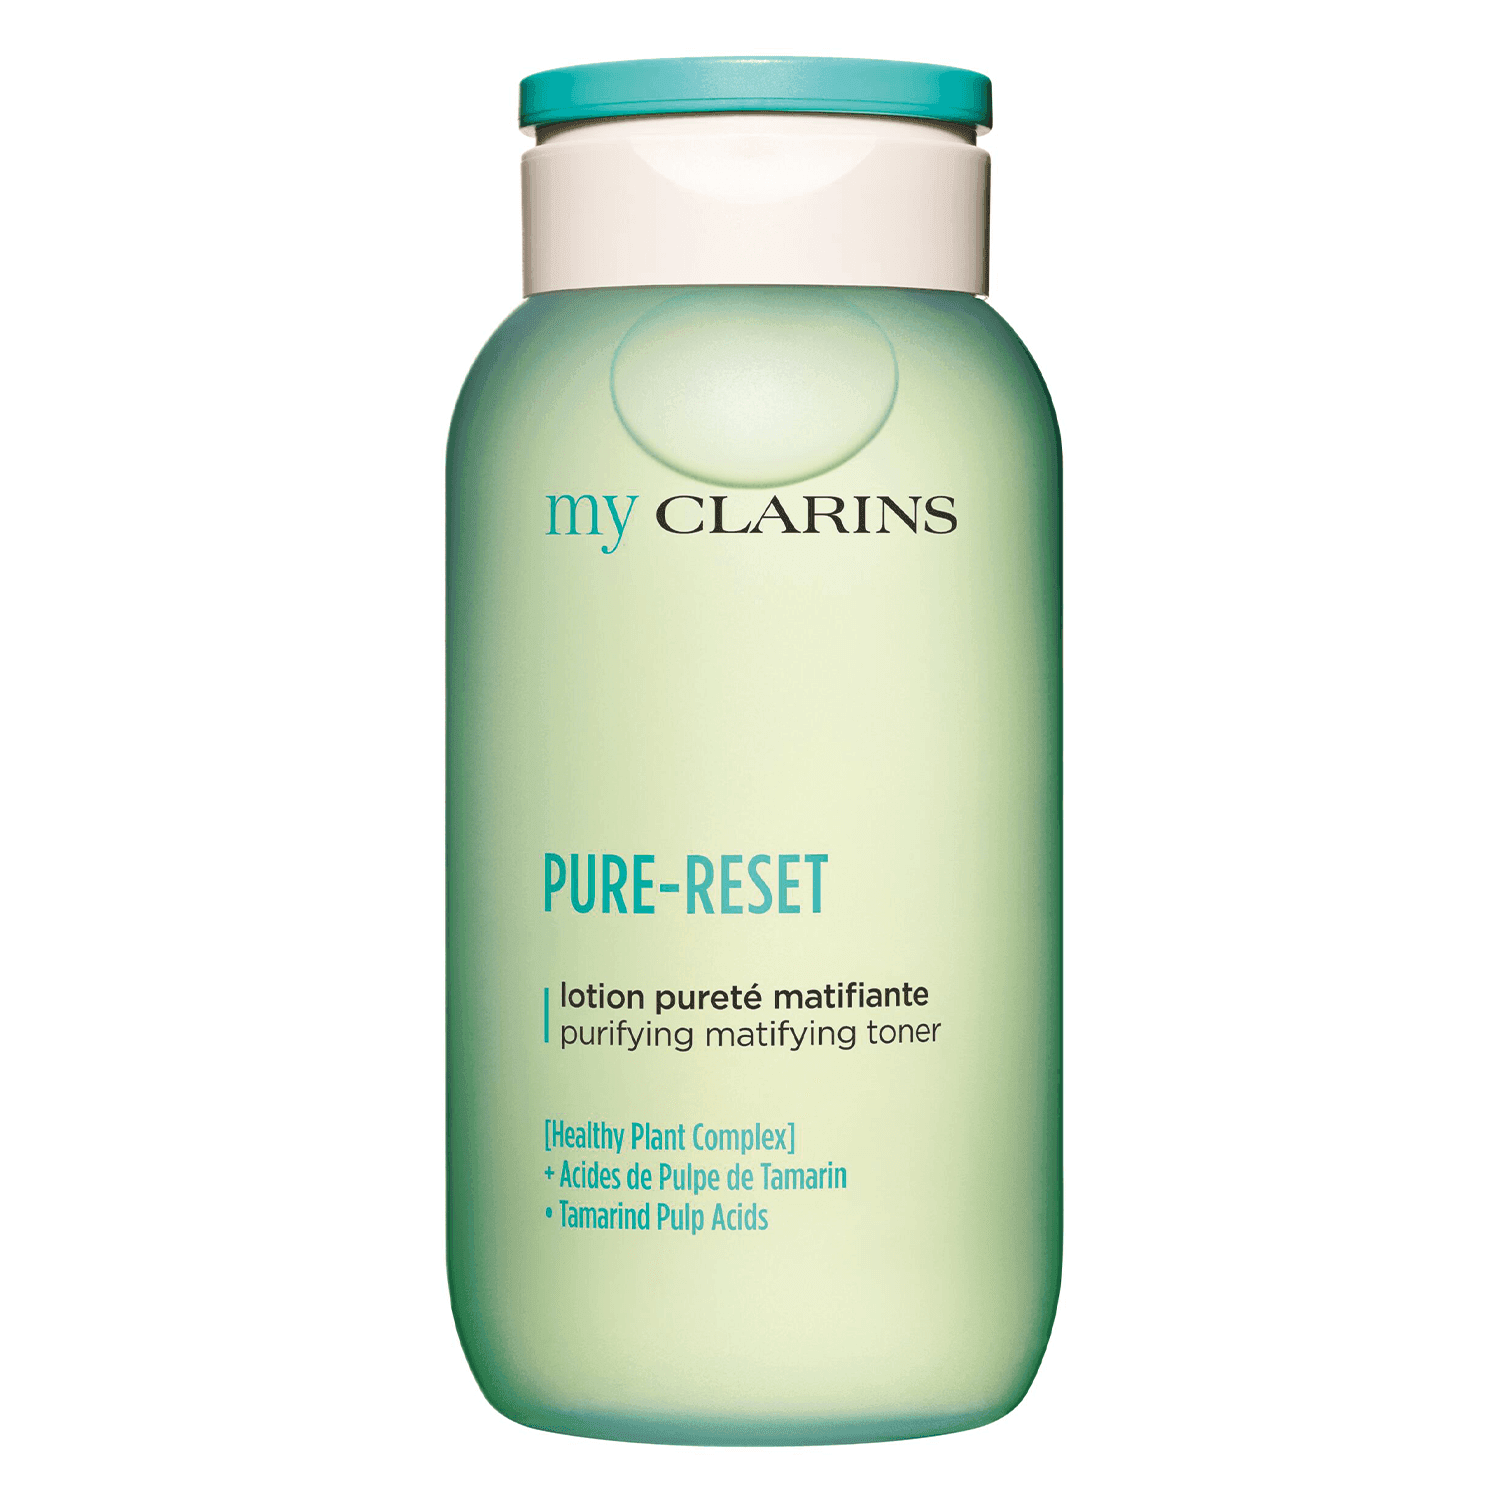 myClarins - PURE-RESET purifying matifying toner